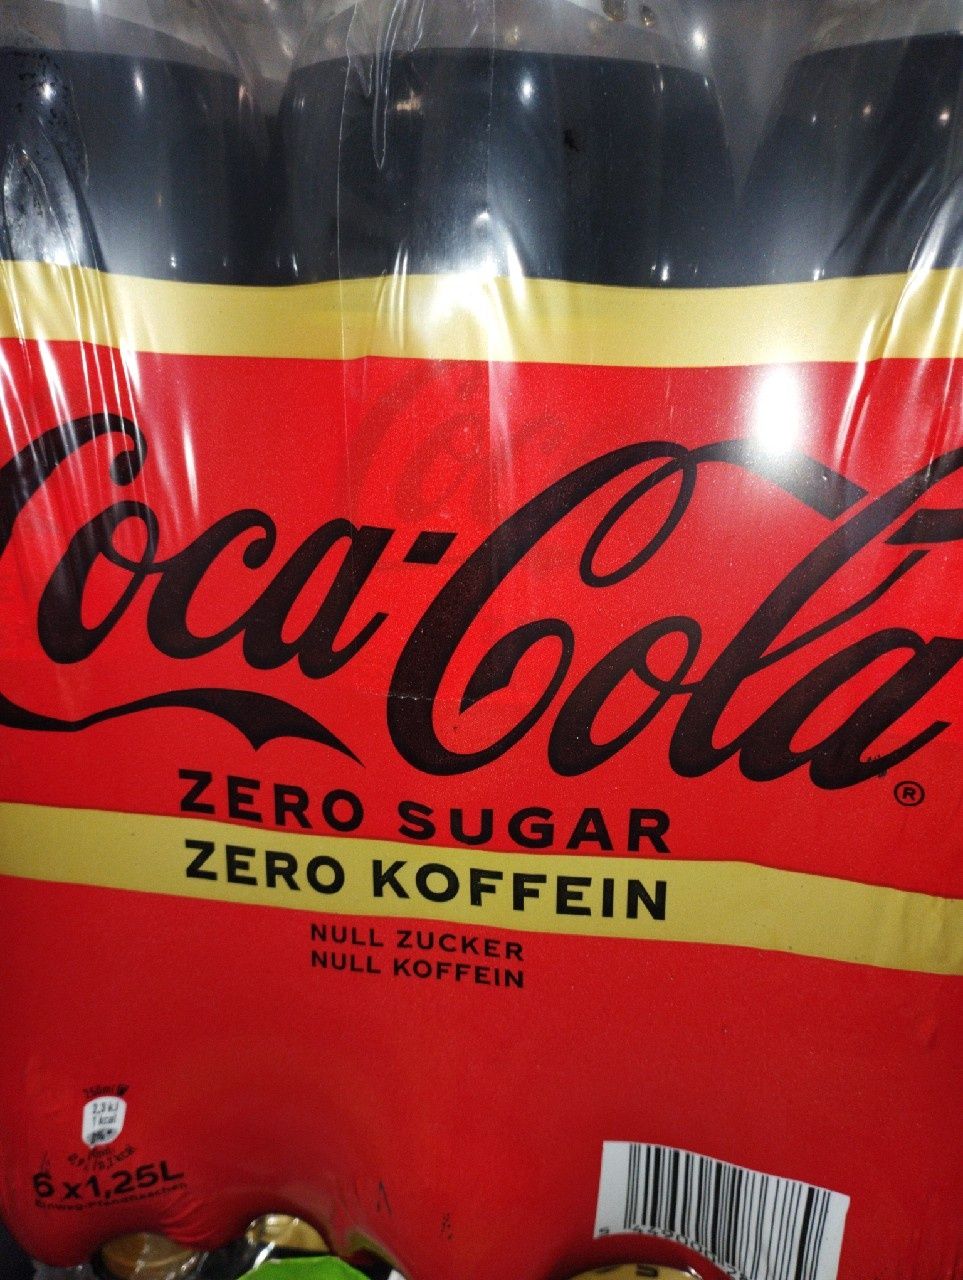 Coca-Cola zero cukru zero kofeiny dla dzieci 6x 1.25 L